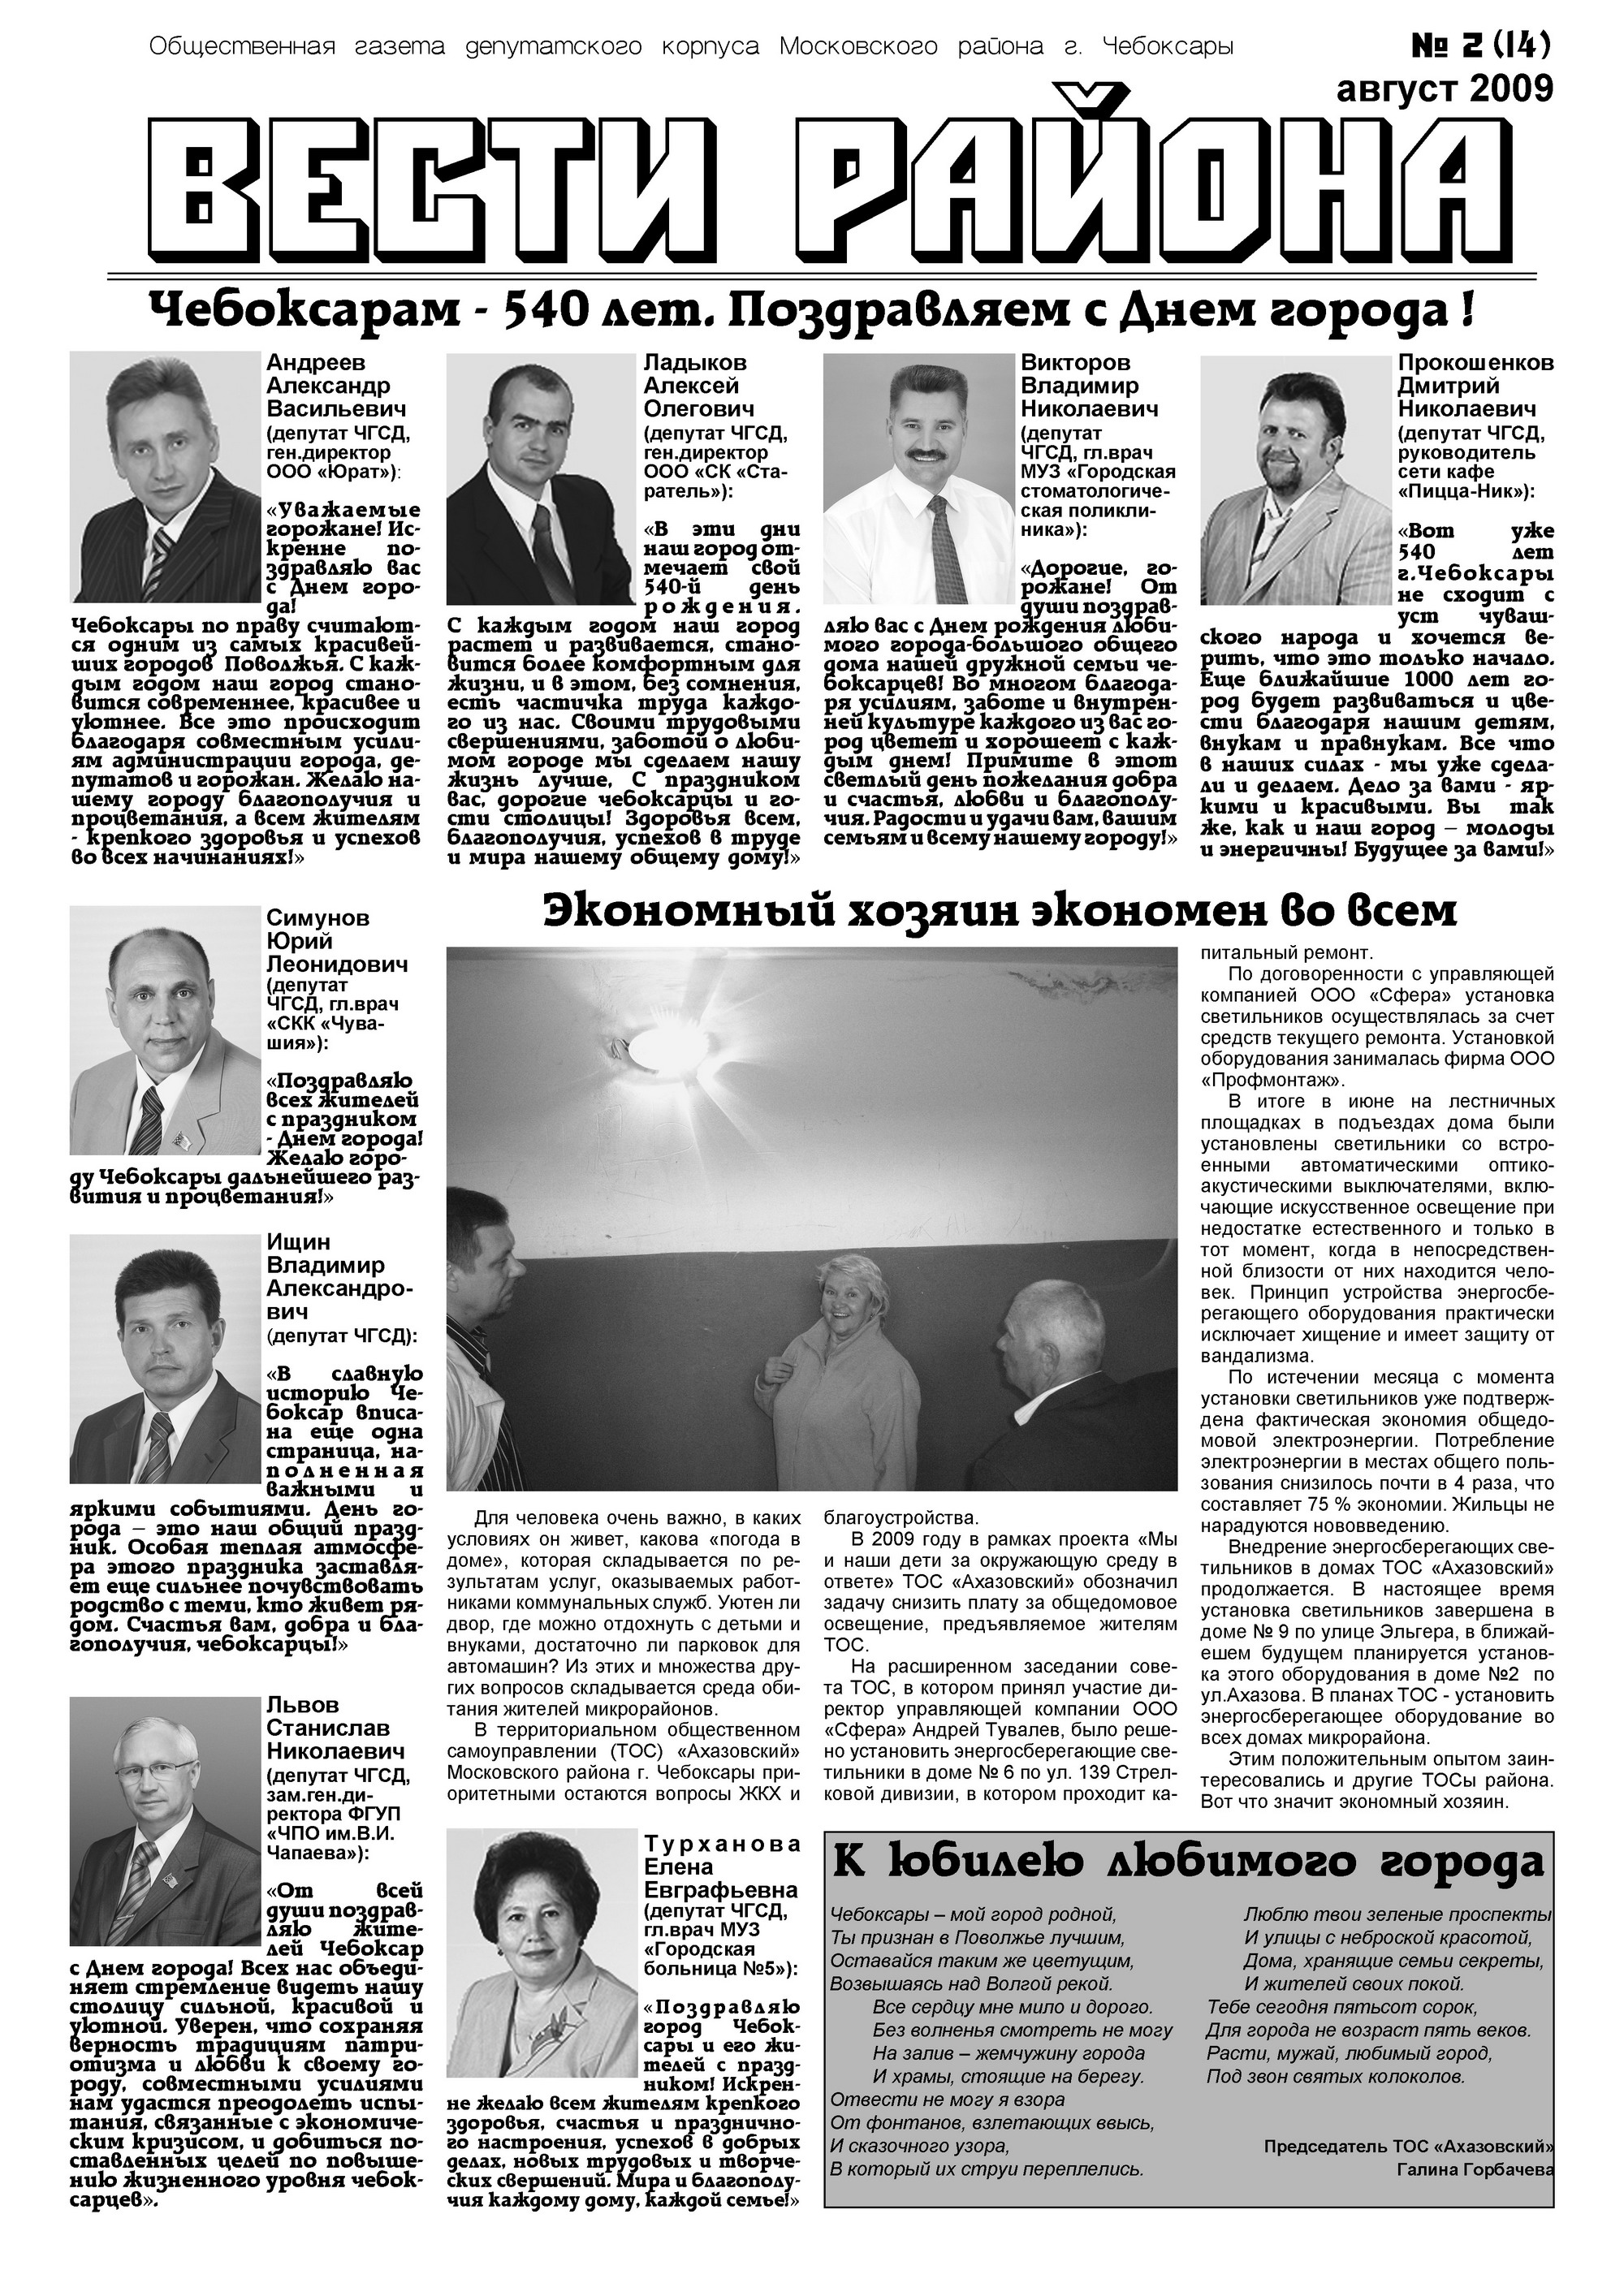 Очередной выпуск газеты «Вести района» посвящен Дню города